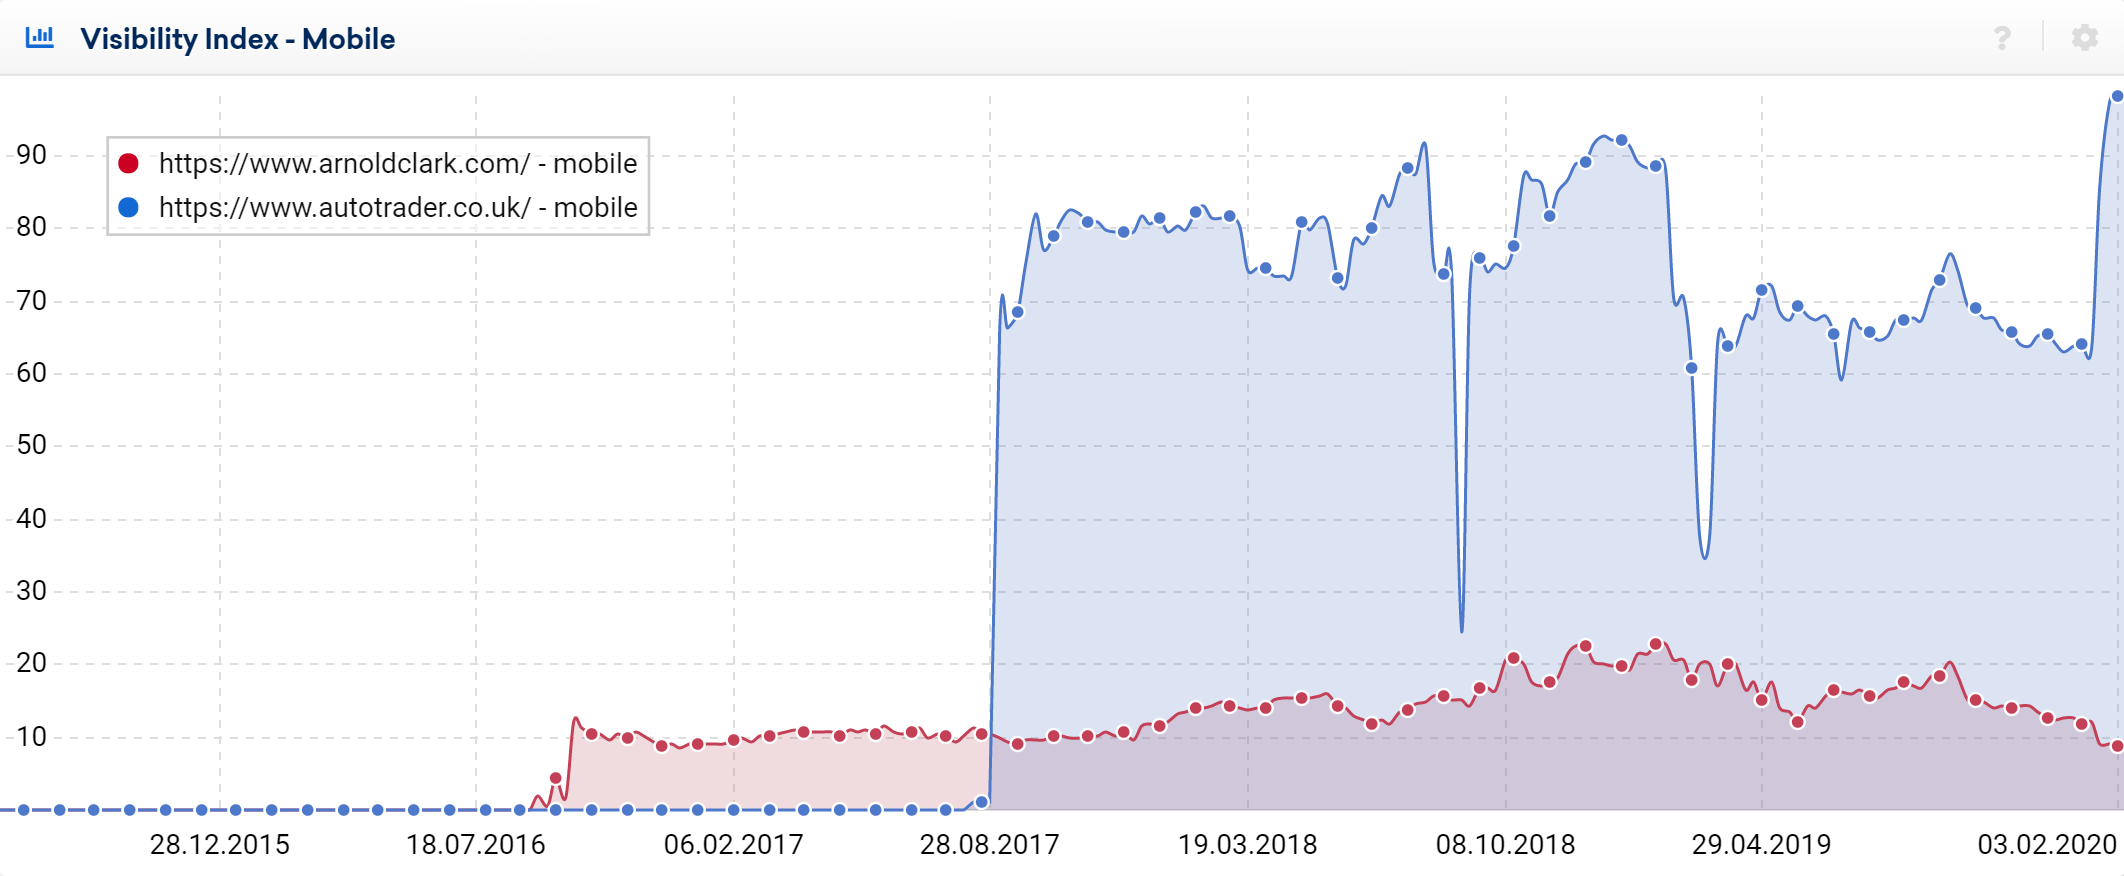 Sichtbarkeitsvergleich zwischen den mobilen Sichtbarkeitswerden der beiden Domains arnoldclark.com und autotrader.co.uk. Zweitere hat mehr als 9x so viel Sichtbarkeit.